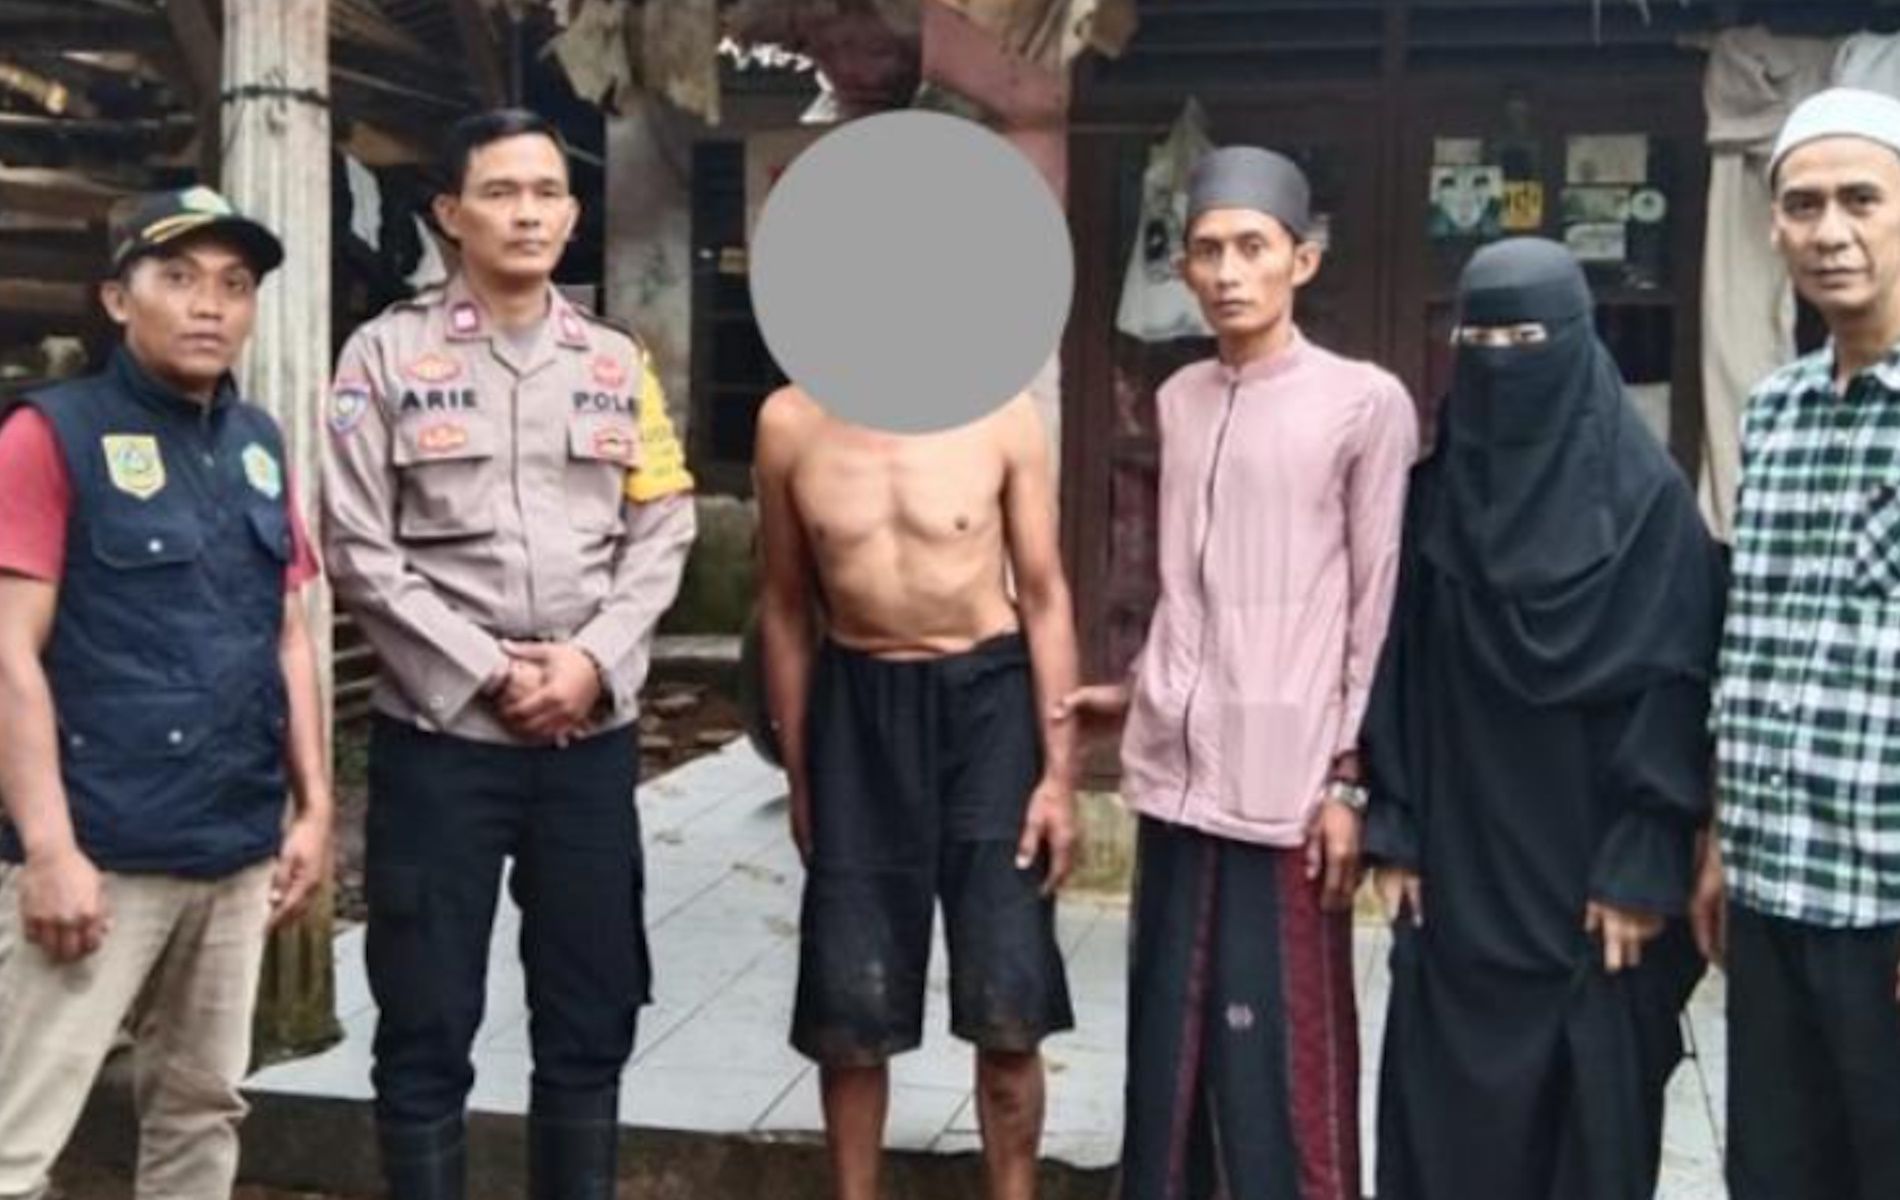 AR alias Boris usia 55 tahun, warga Kampung Kubang, pelaku pencurian pakaian dalam wanita di Ciawi, Bogor, saat diintegorasi Polsek Ciawi.